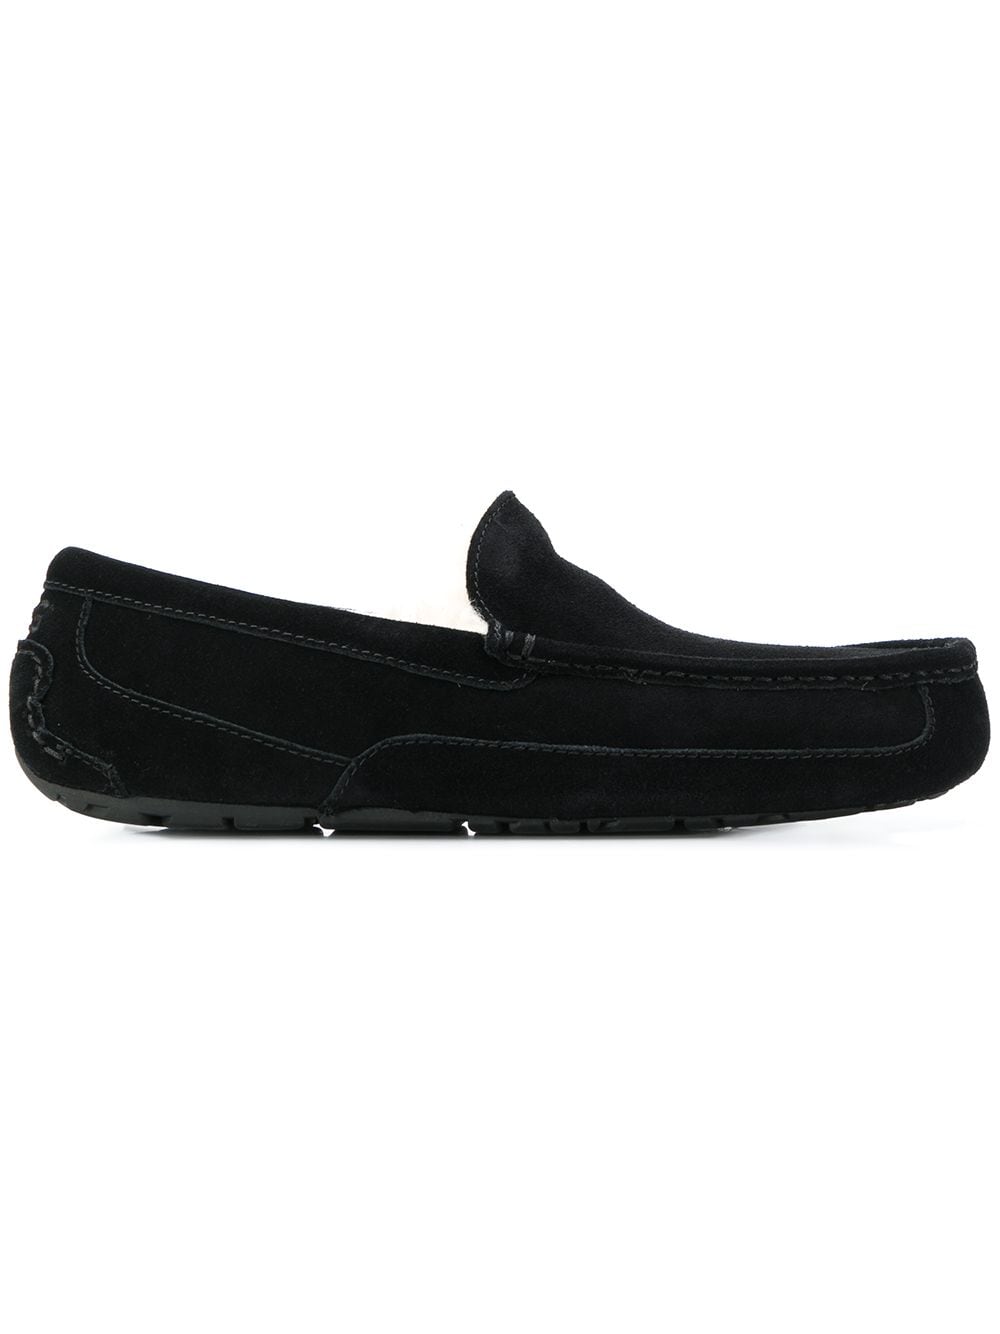 UGG soft lined slippers - Black von UGG